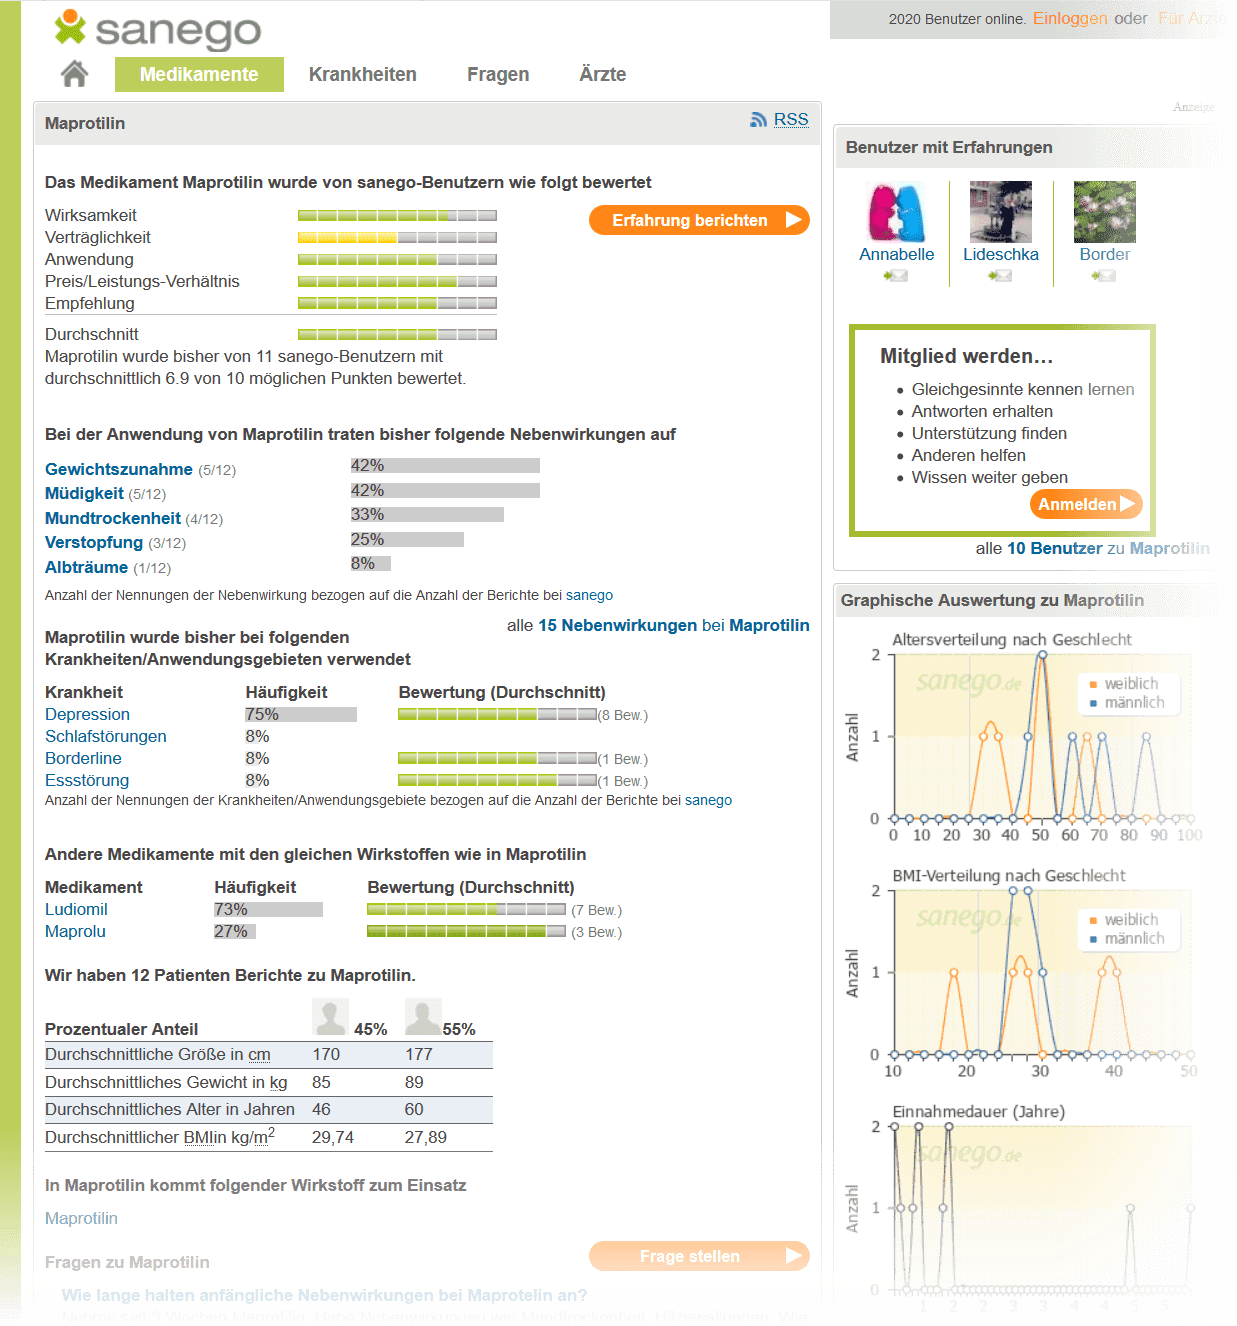 Maprotilin Erfahrungsberichte über Wirkung und Nebenwirkungen (auch für Ludiomil und Maprolu) findet man bei sanego.de (Screenshot 12.05.2020)